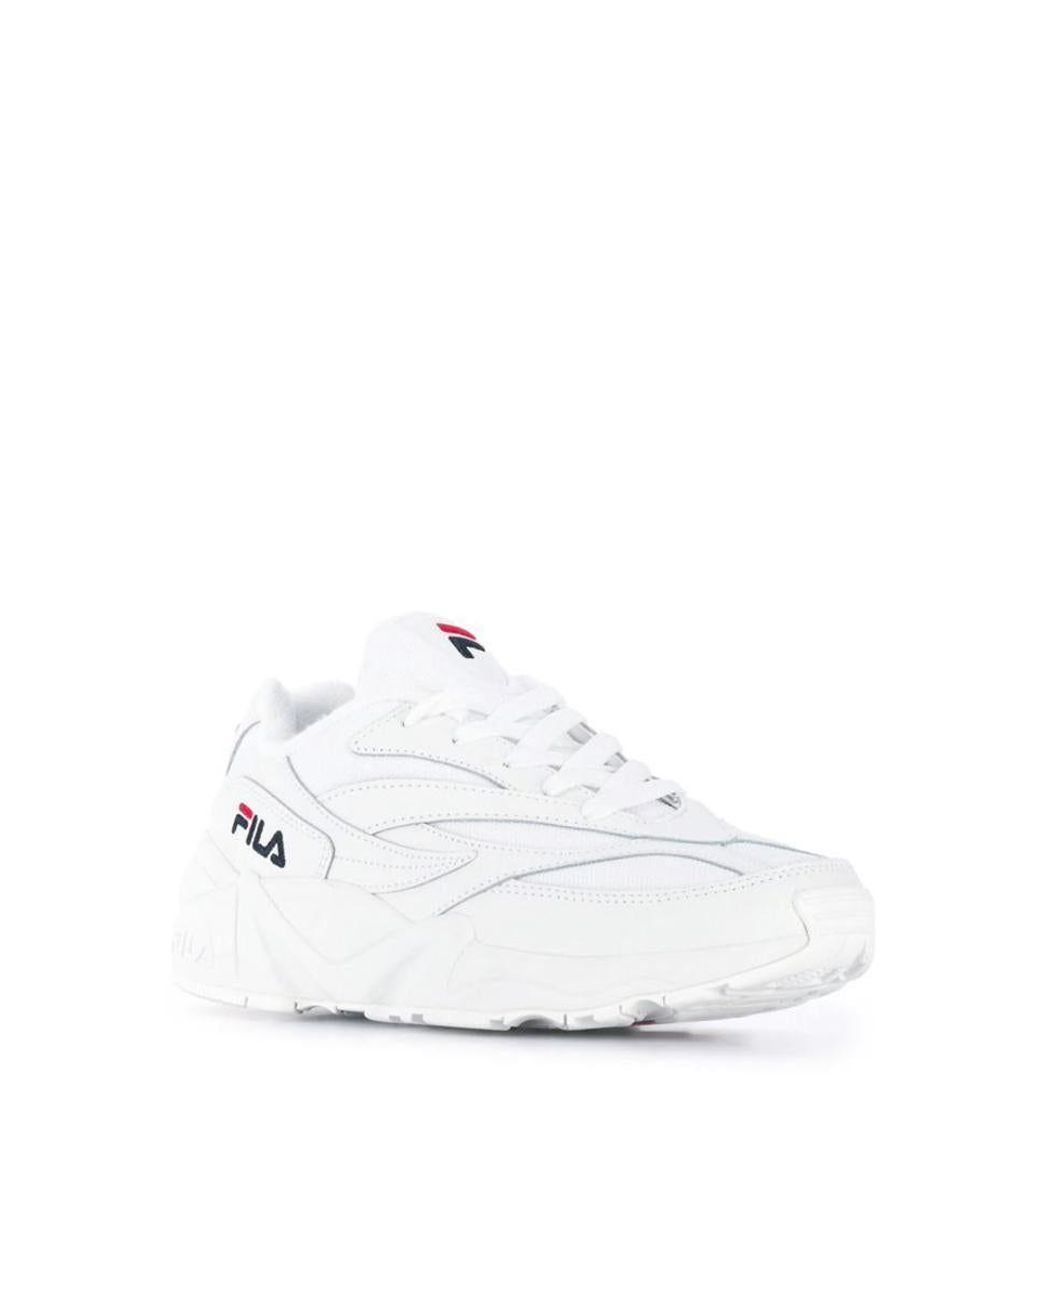 Fila V94m Low Wmn Sneakers in White | Lyst